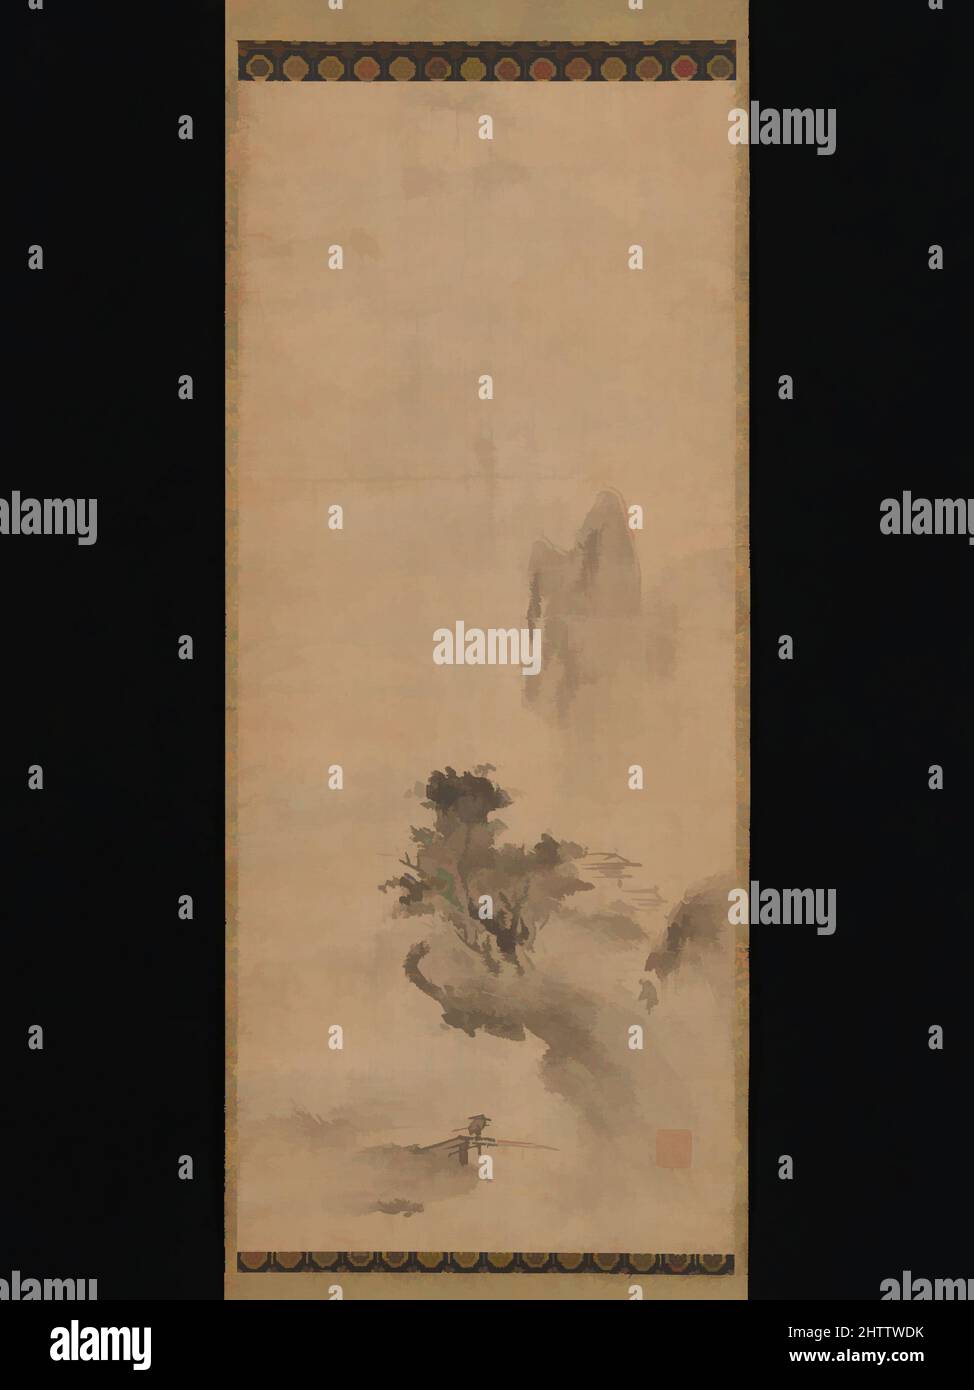 Art inspiré par le paysage d'encre en éclats, 破墨山水図, période de Muromachi (1392–1573), début du 16th siècle, Japon, Rouleau suspendu ; encre sur papier, image : 31 1/2 × 13 3/8 po. (80 × 33,9 cm), peintures, Bokushō Shūshō (japonais, actif fin 15th–début 16th siècle), cette peinture évocatrice de Bokushō, œuvres classiques modernisées par Artotop avec une touche de modernité. Formes, couleur et valeur, impact visuel accrocheur sur l'art émotions par la liberté d'œuvres d'art d'une manière contemporaine. Un message intemporel qui cherche une nouvelle direction créative. Artistes qui se tournent vers le support numérique et créent le NFT Artotop Banque D'Images